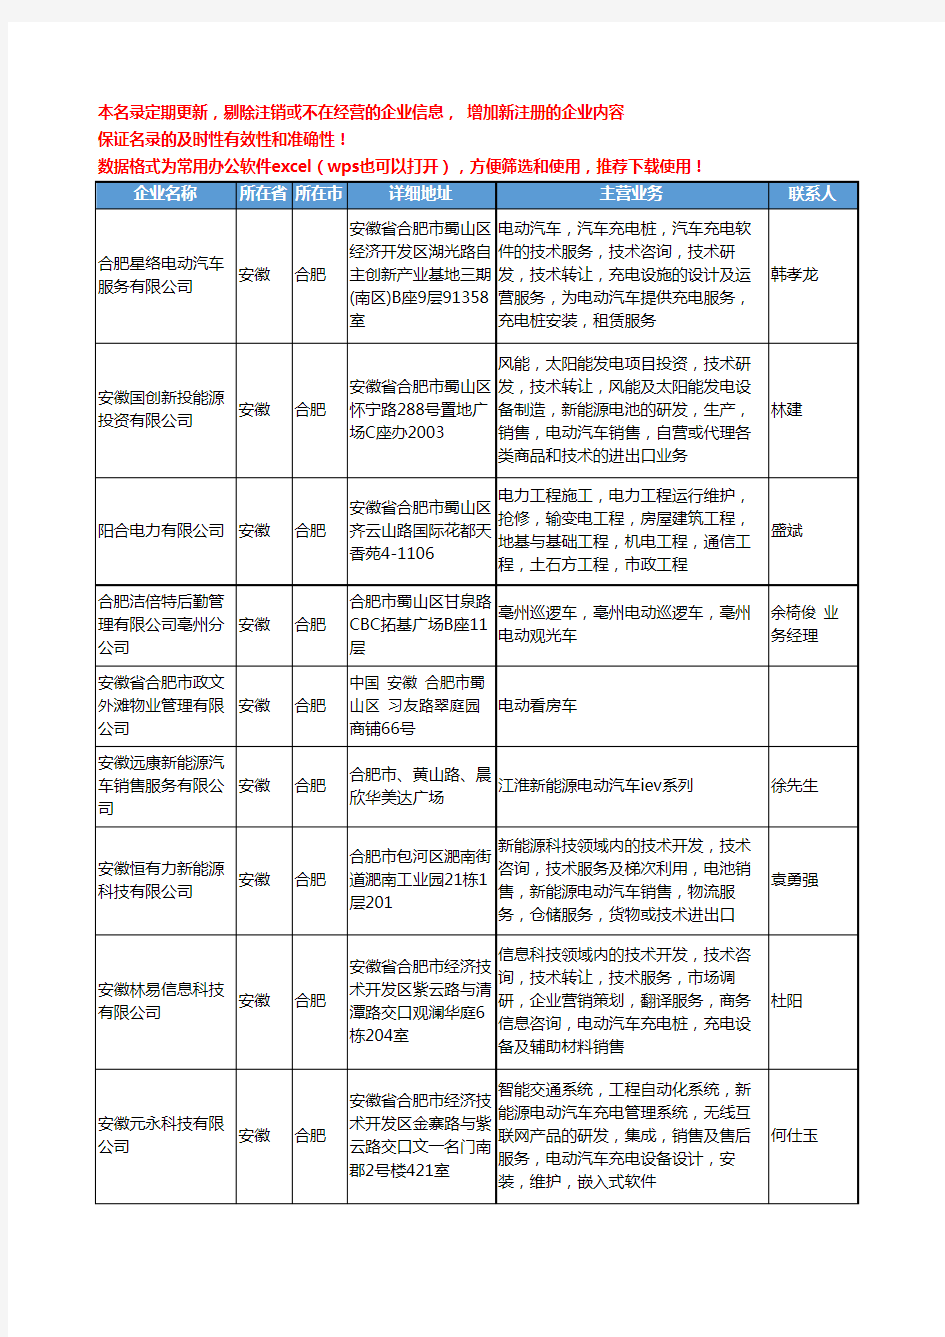 2020新版安徽省电动汽车工商企业公司名录名单黄页联系方式大全34家